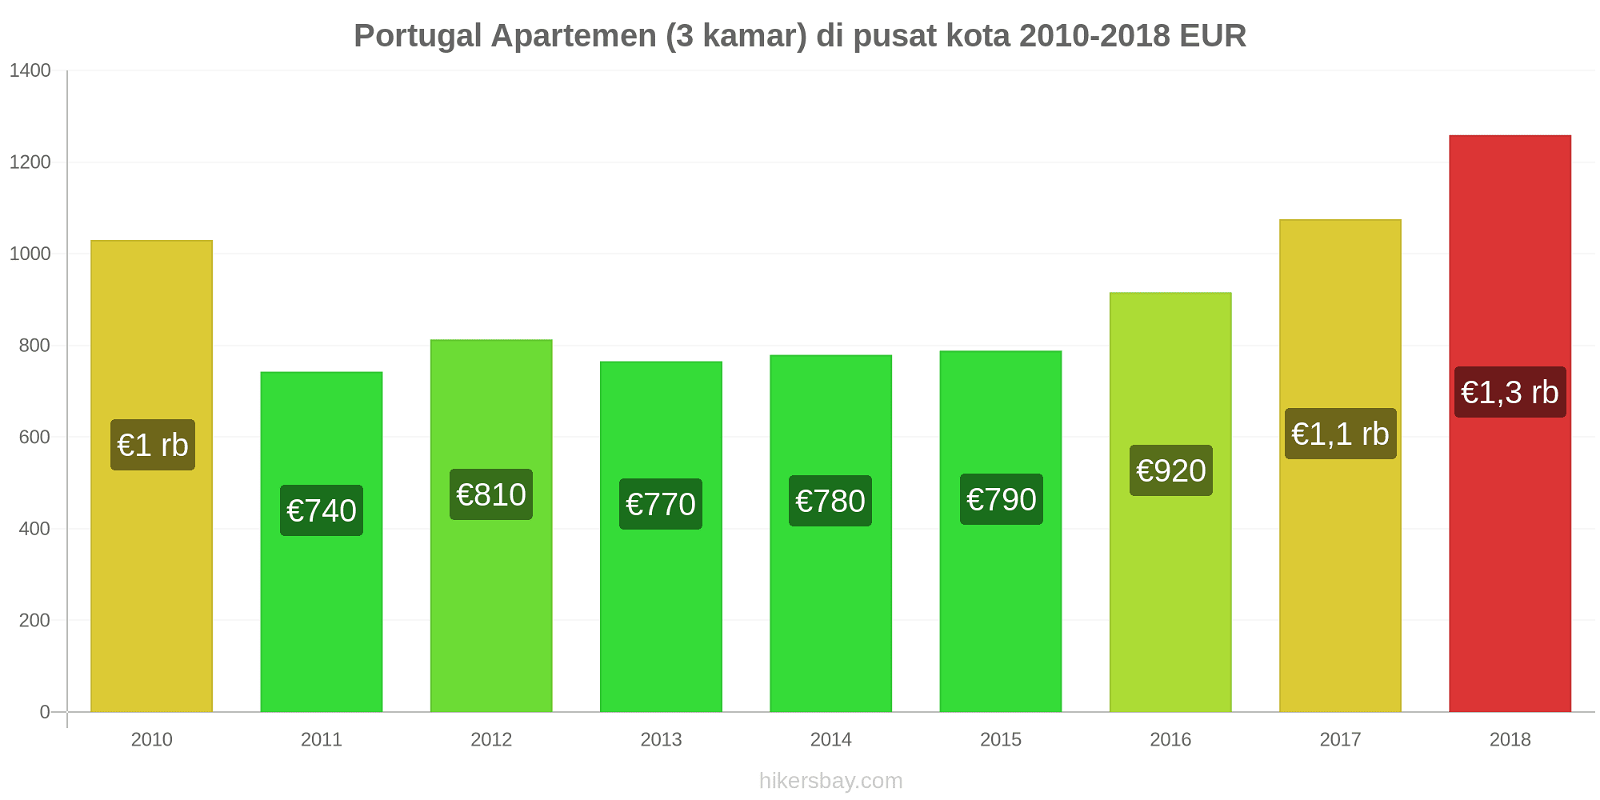 Portugal perubahan harga Apartemen (3 kamar) di pusat kota hikersbay.com